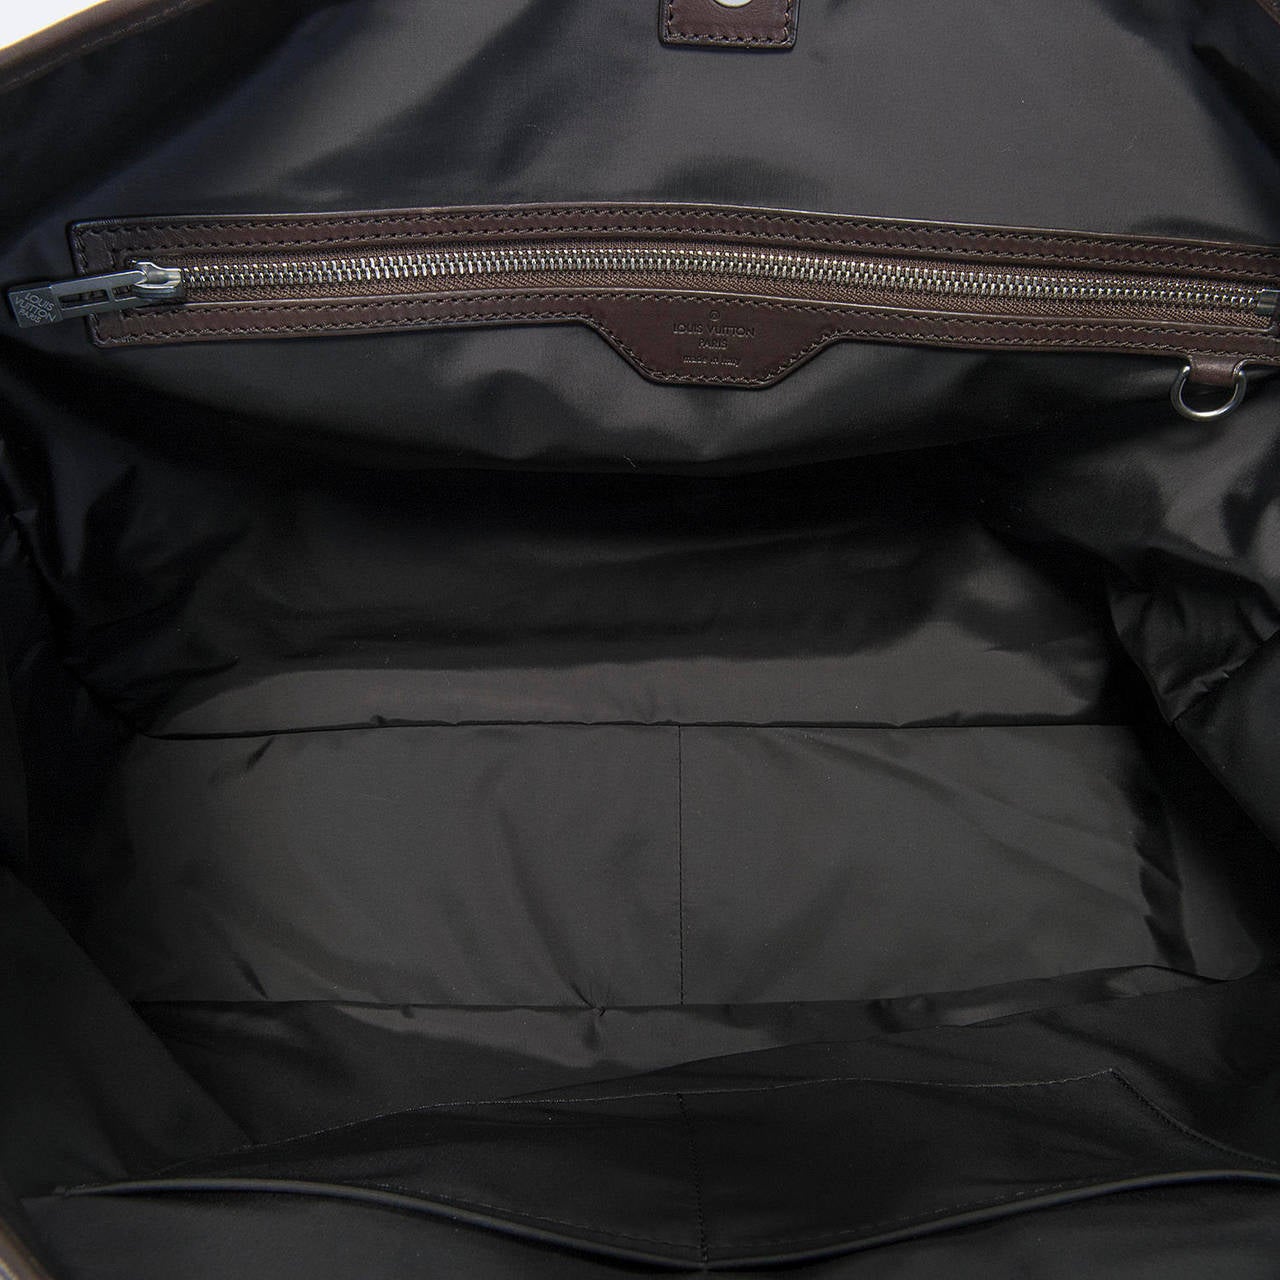 A Super Large Louis Vuitton 40cm Tote & Shoulder Bag with Palladium Hardware 1